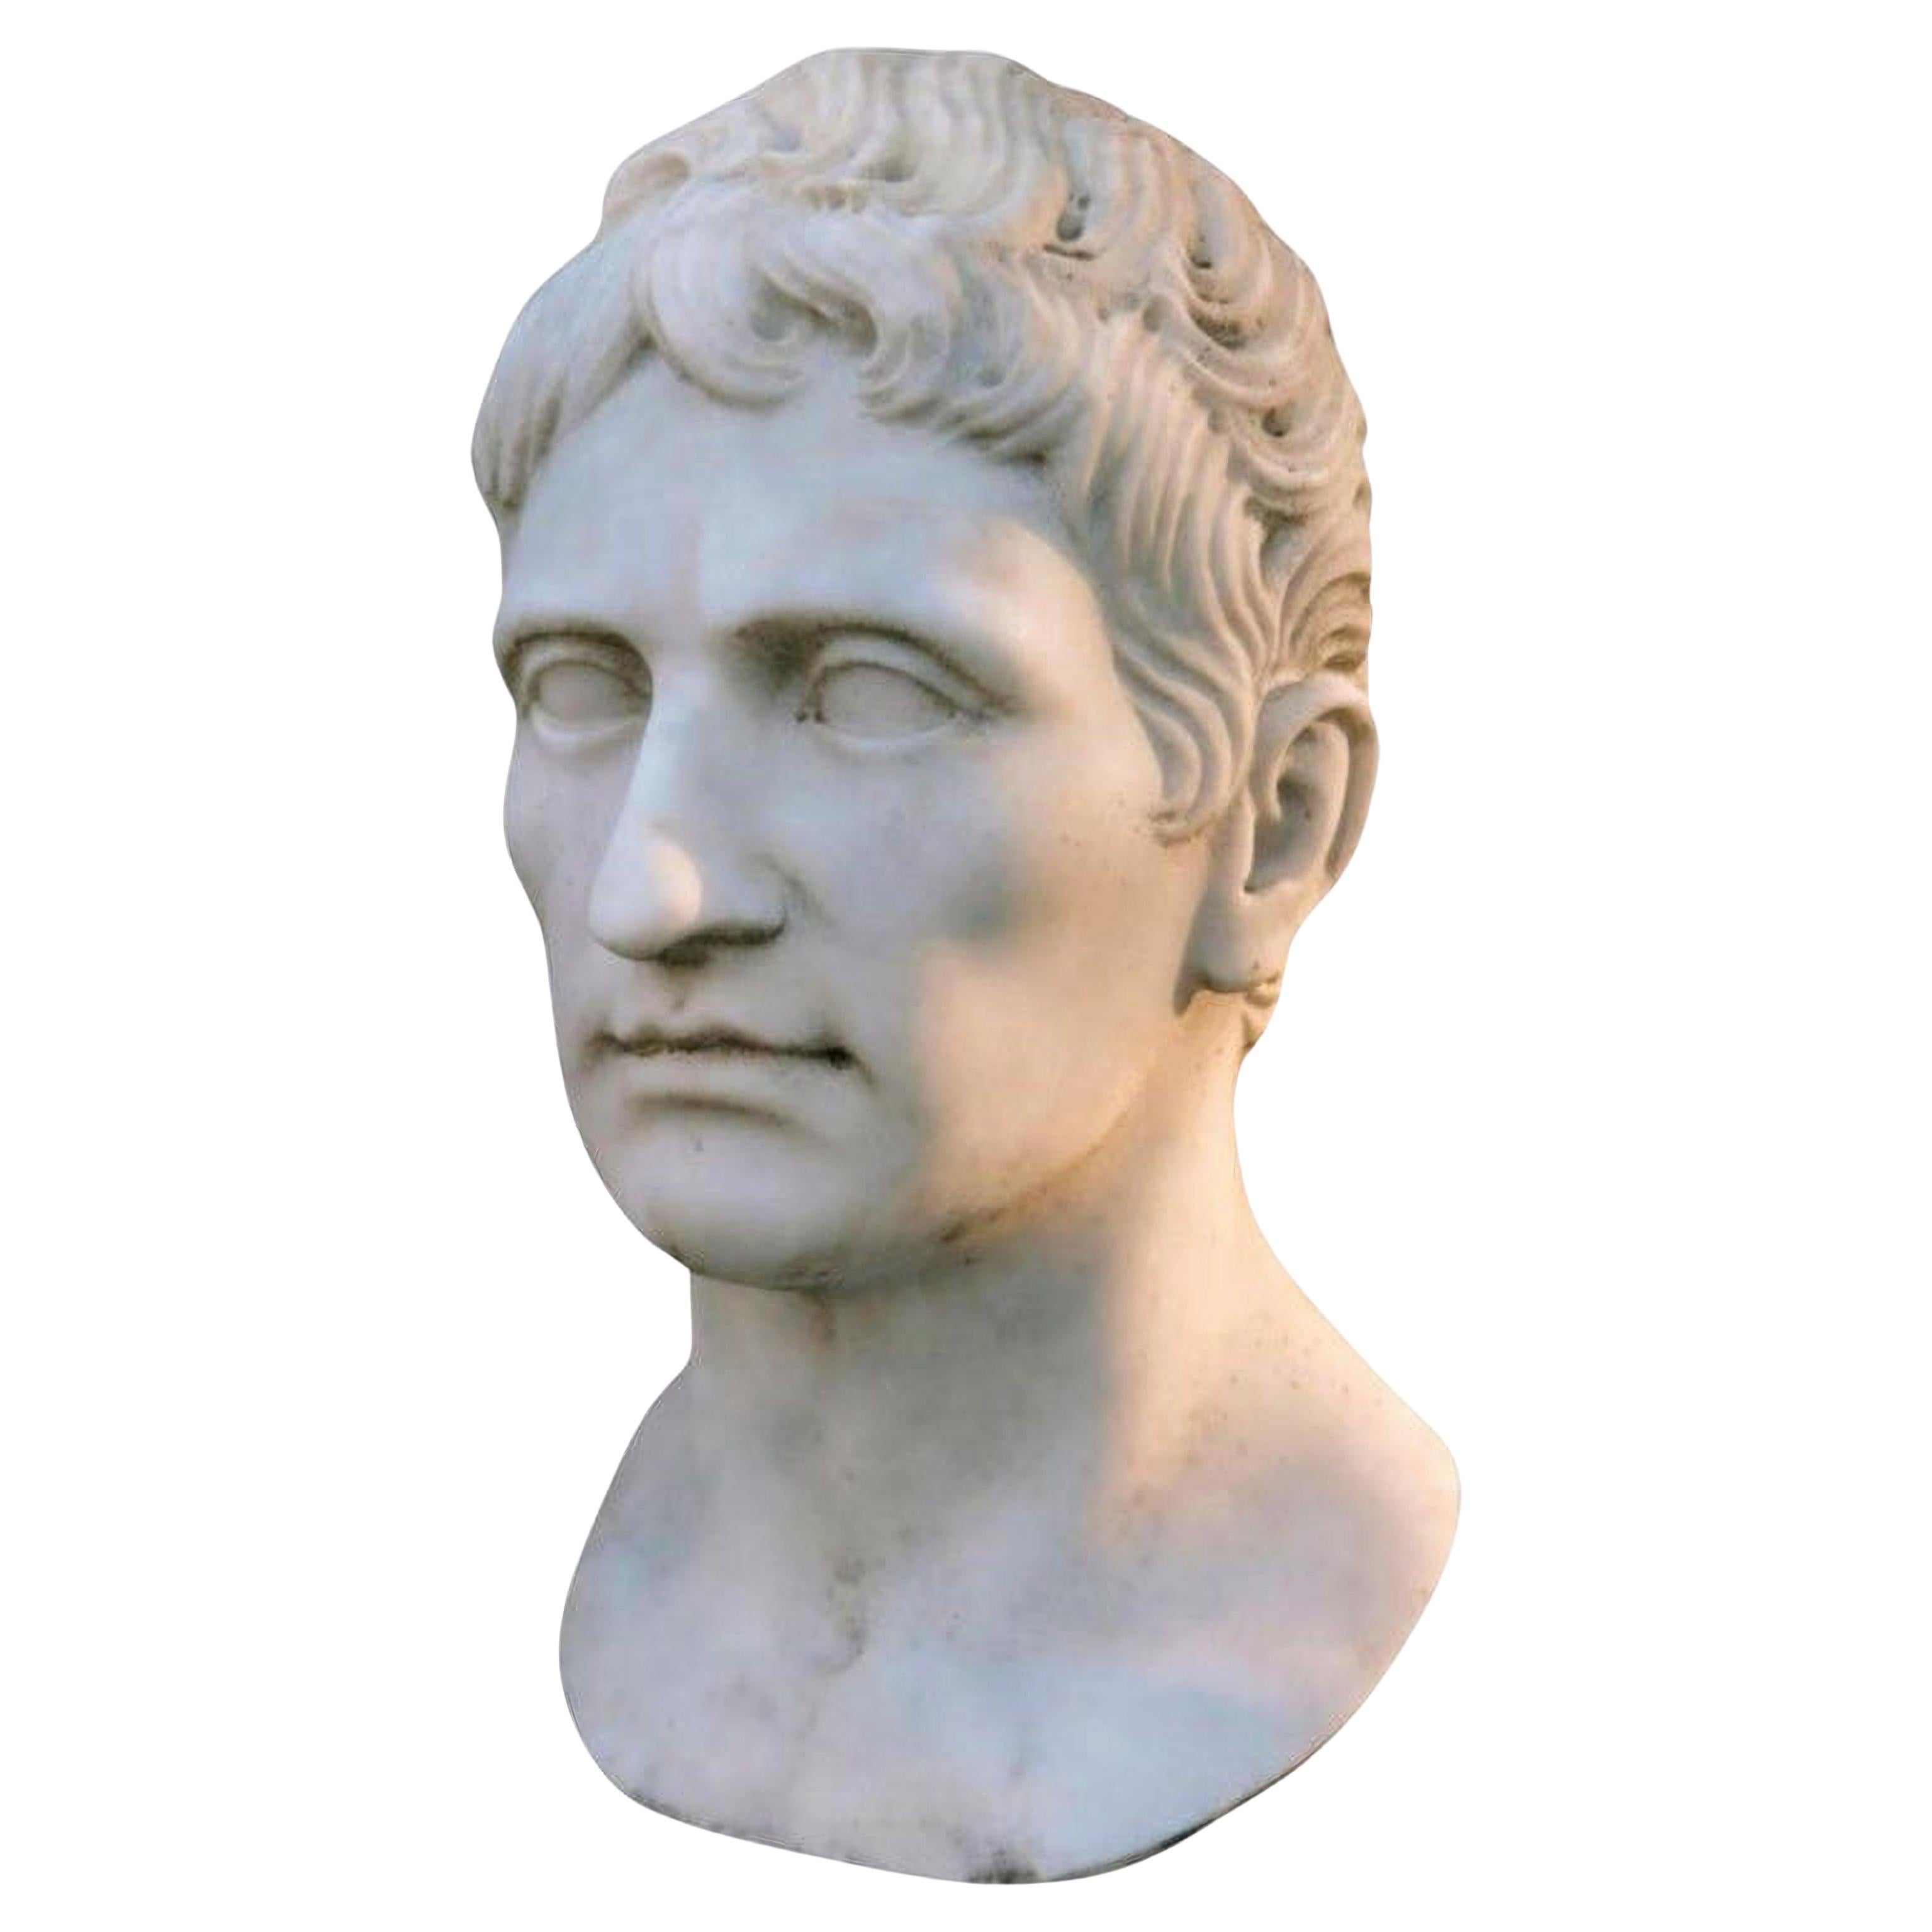 Empereur Auguste, tête en marbre blanc de Carrare, premier empereur romain, début du 20e siècle